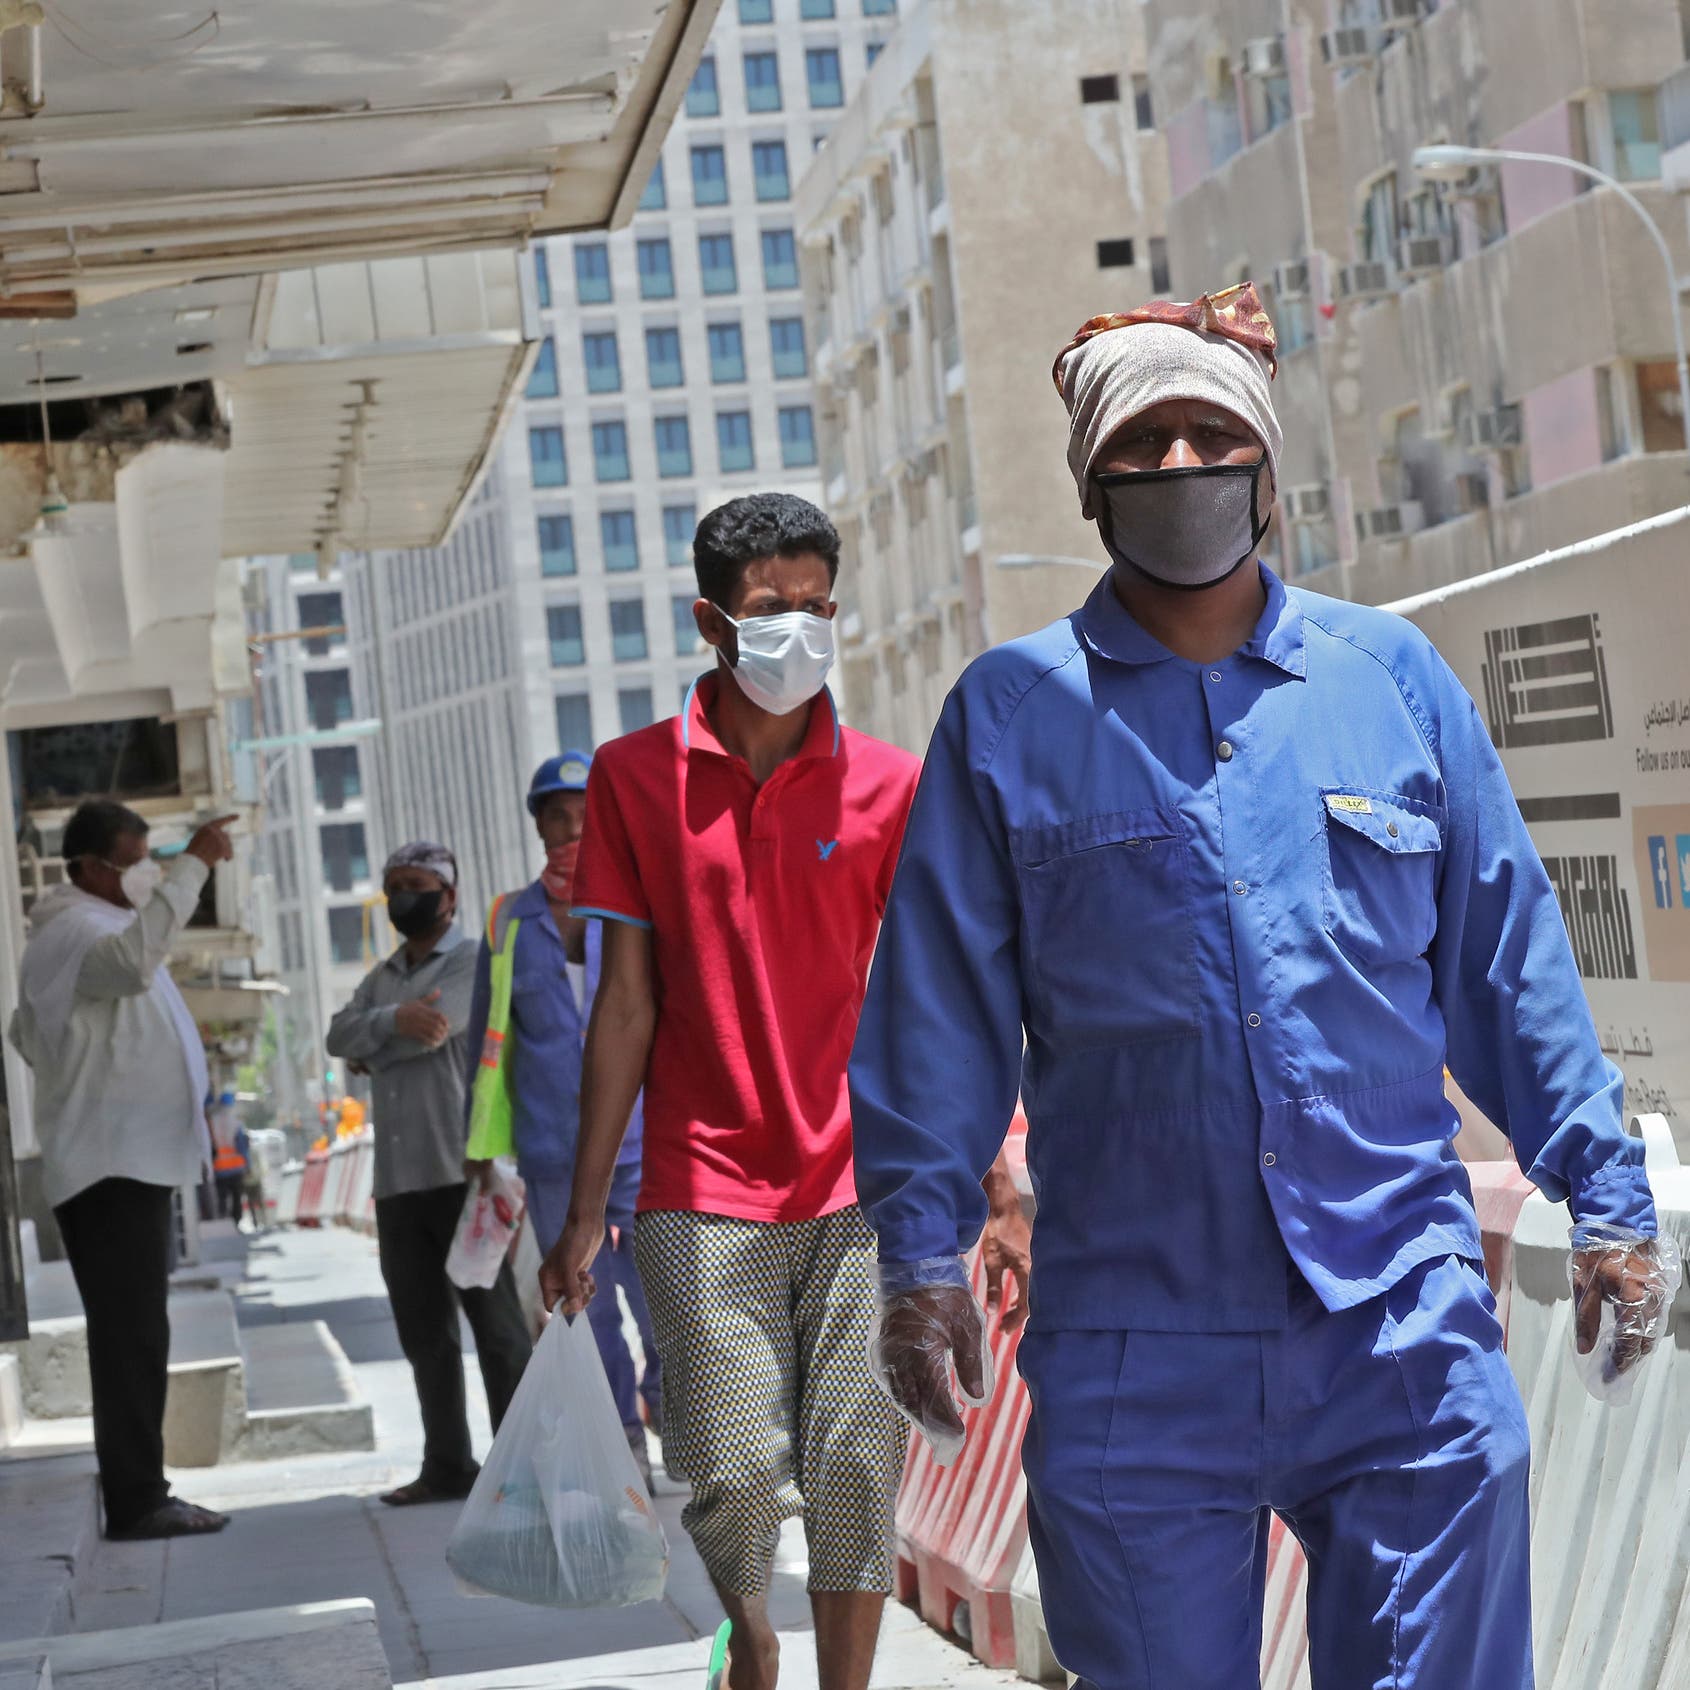 فوكس نيوز: هل كذبت قطر بشأن وفيات كورونا لتحتفظ بكأس العالم؟